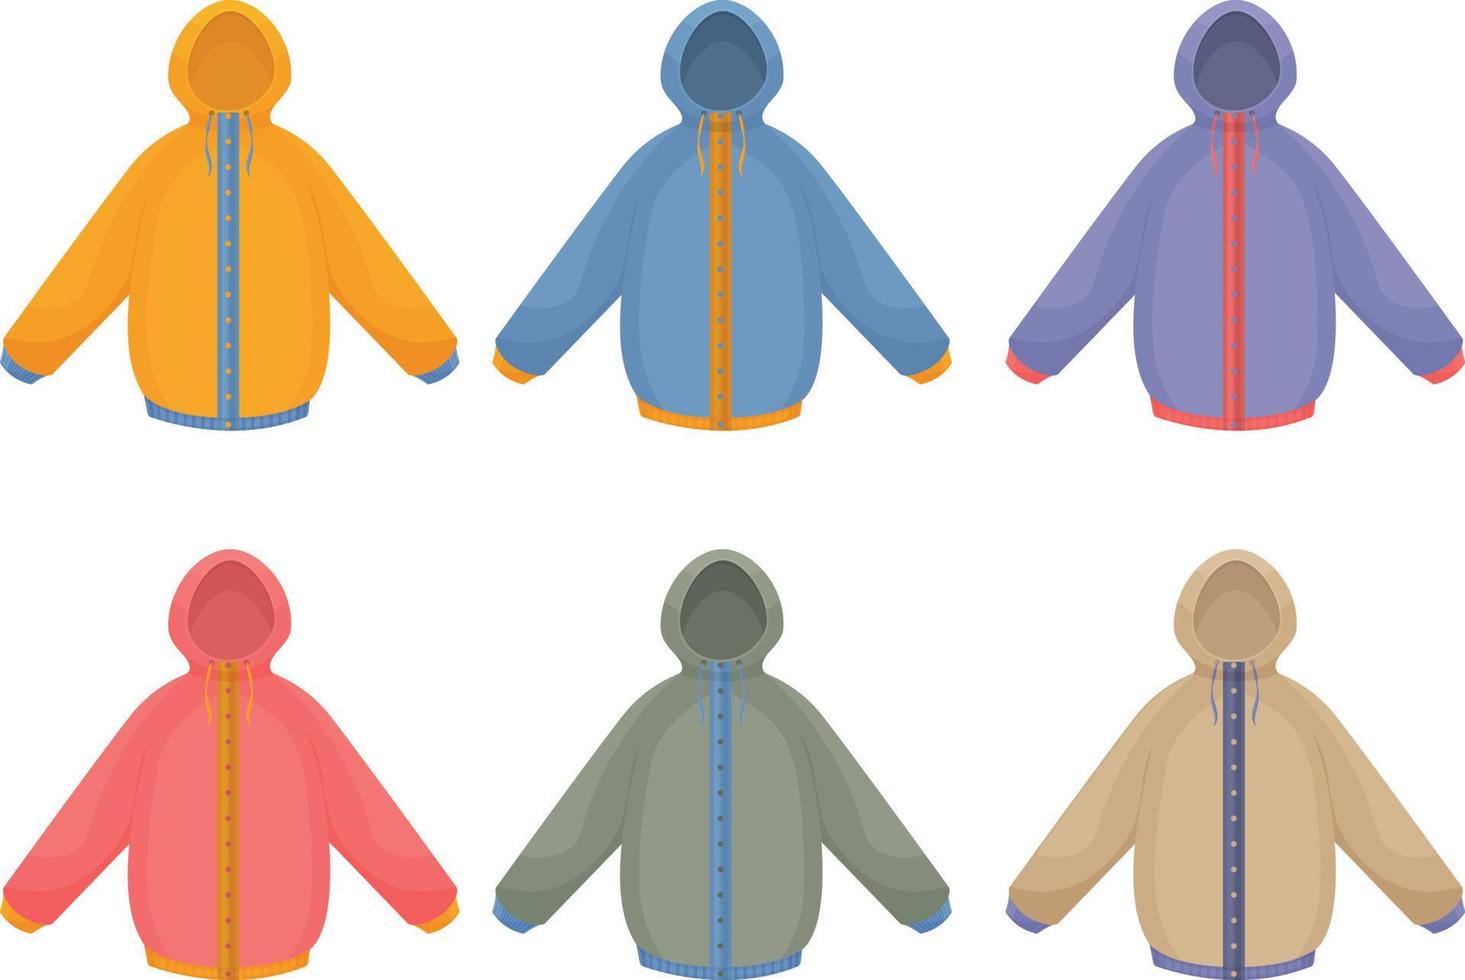 un gran conjunto con la imagen de cálidas chaquetas otoñales de diferentes colores y estilos. chaquetas aislantes para caminar y practicar deportes en climas fríos. chaquetas de invierno ilustración vectorial vector